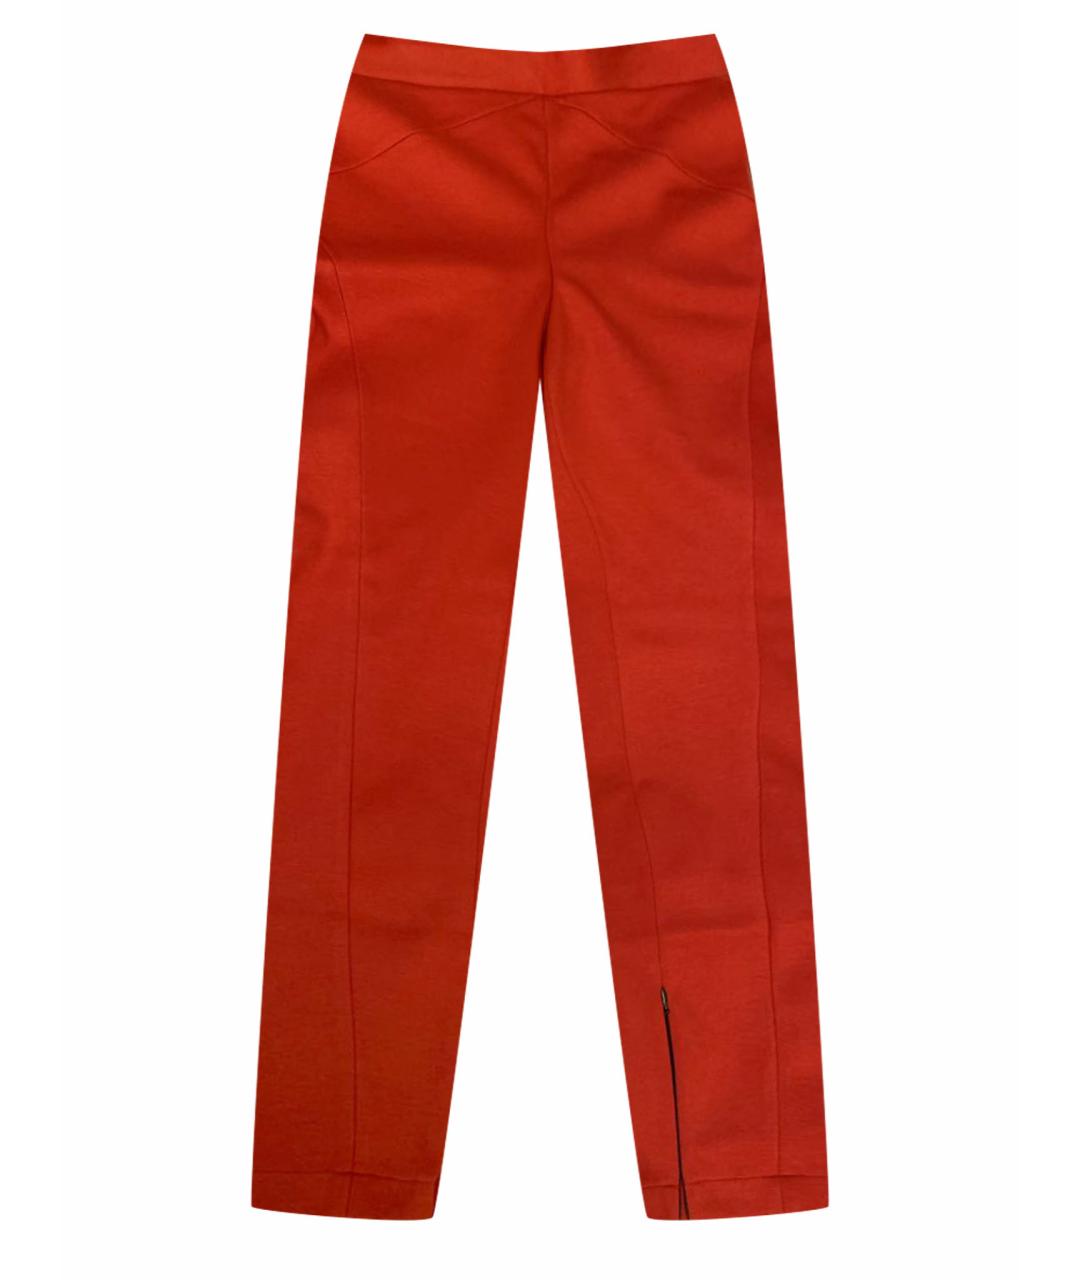 ROBERT RODRIGUEZ Красные брюки узкие, фото 1